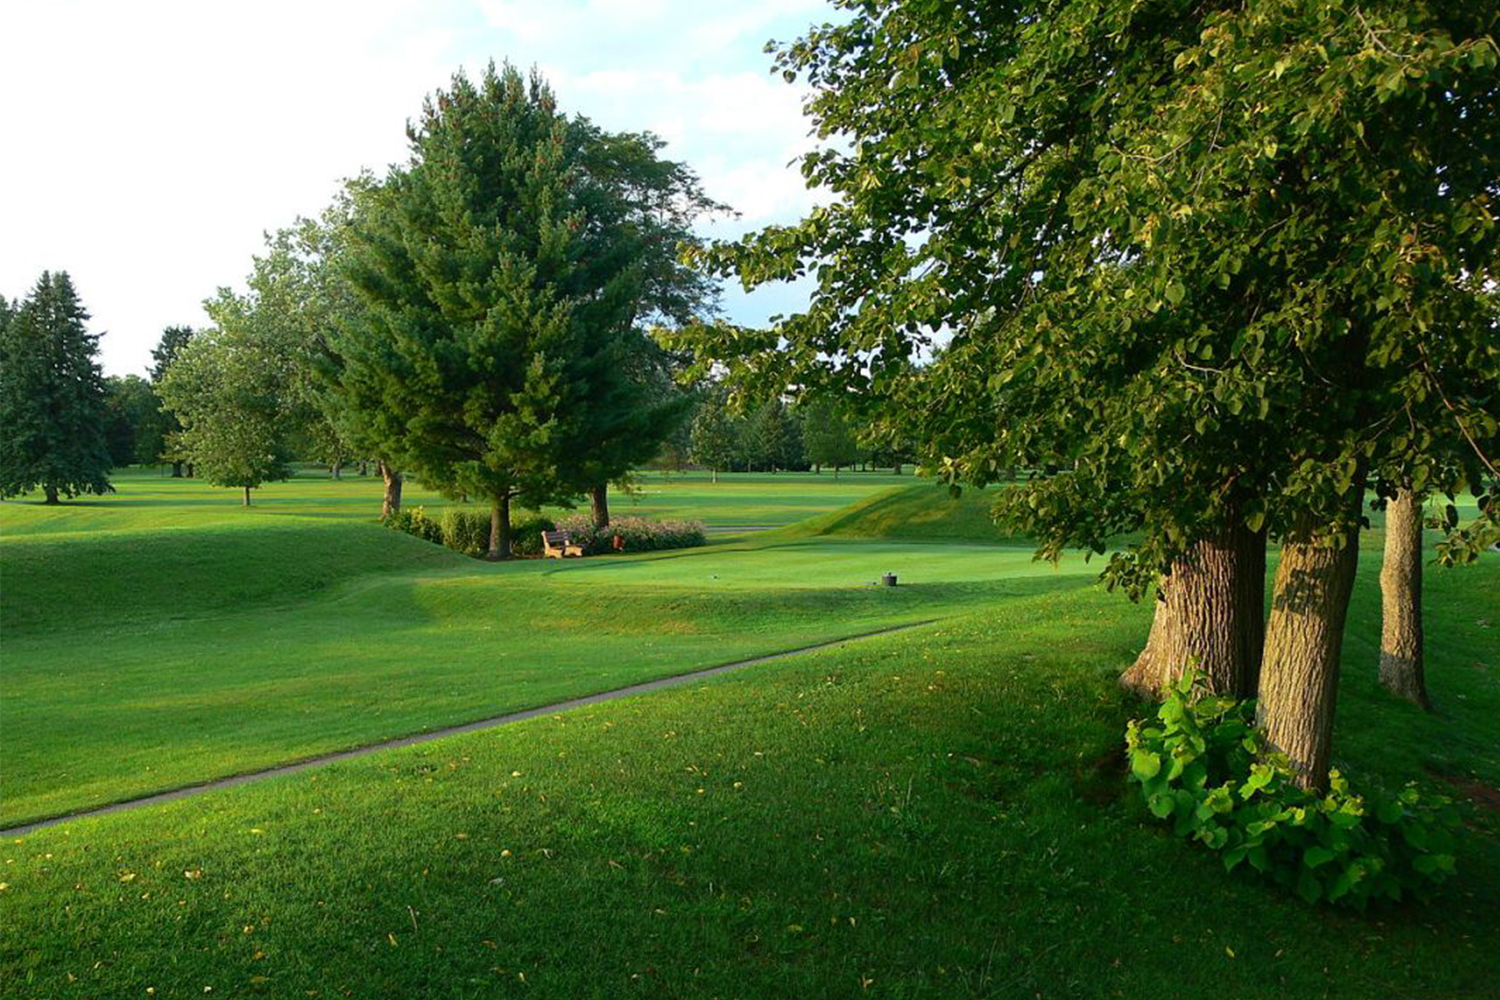 Golf Course Built On Ceremonial Earthworks Faces Lawsuit